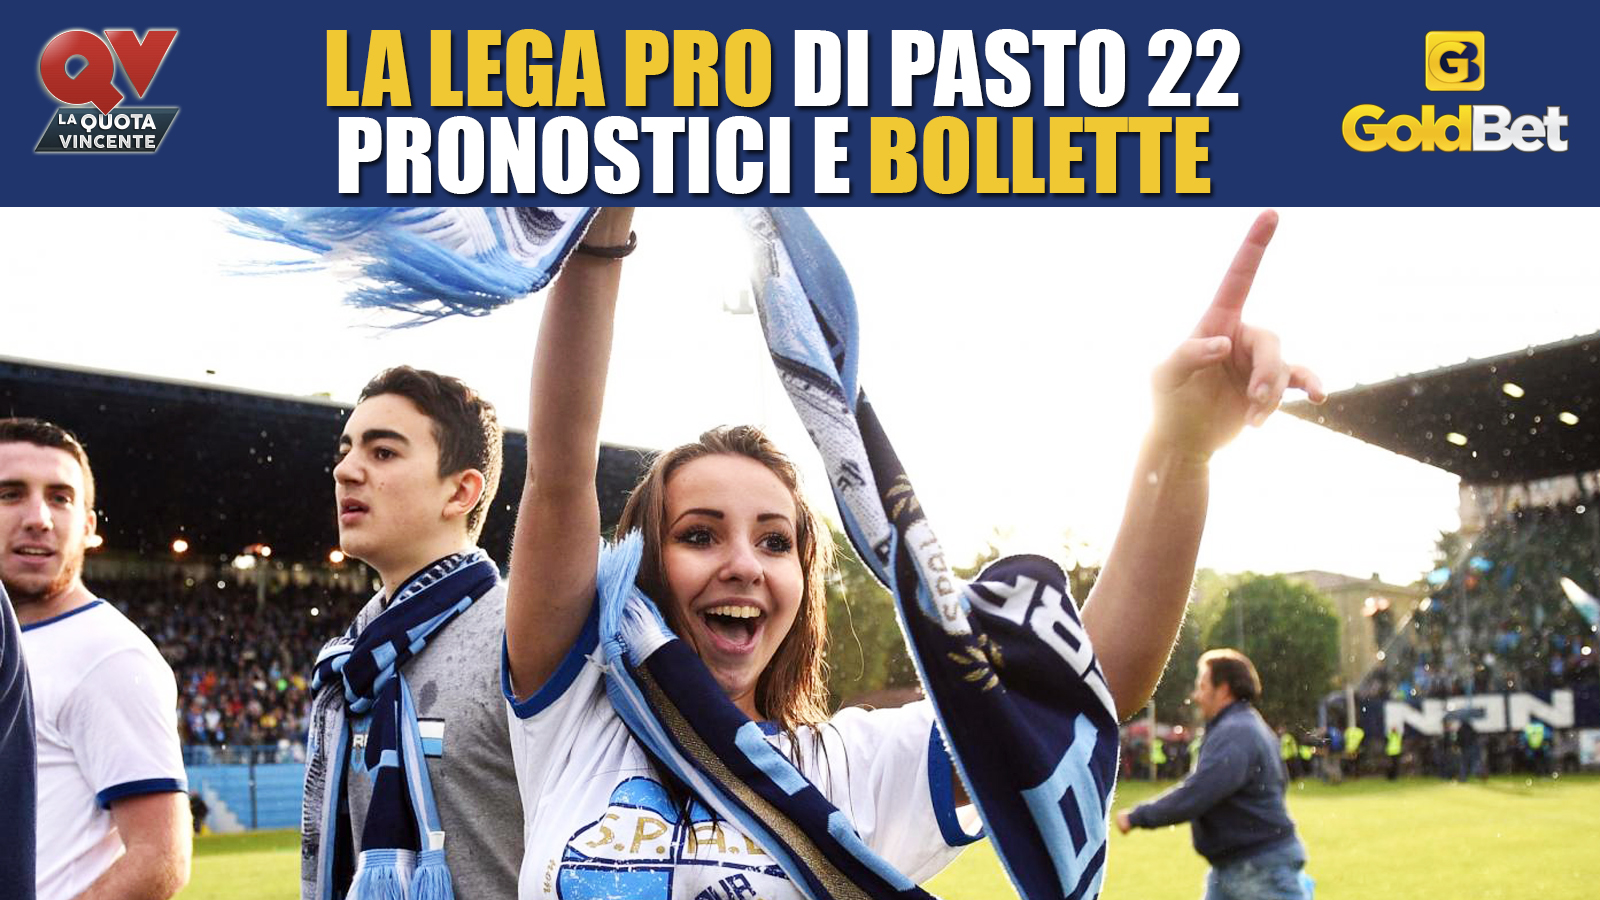 lega_pro_blog_qv_pasto_22_benevento_esultanza_news_spal_tifosa_bollette_calcio